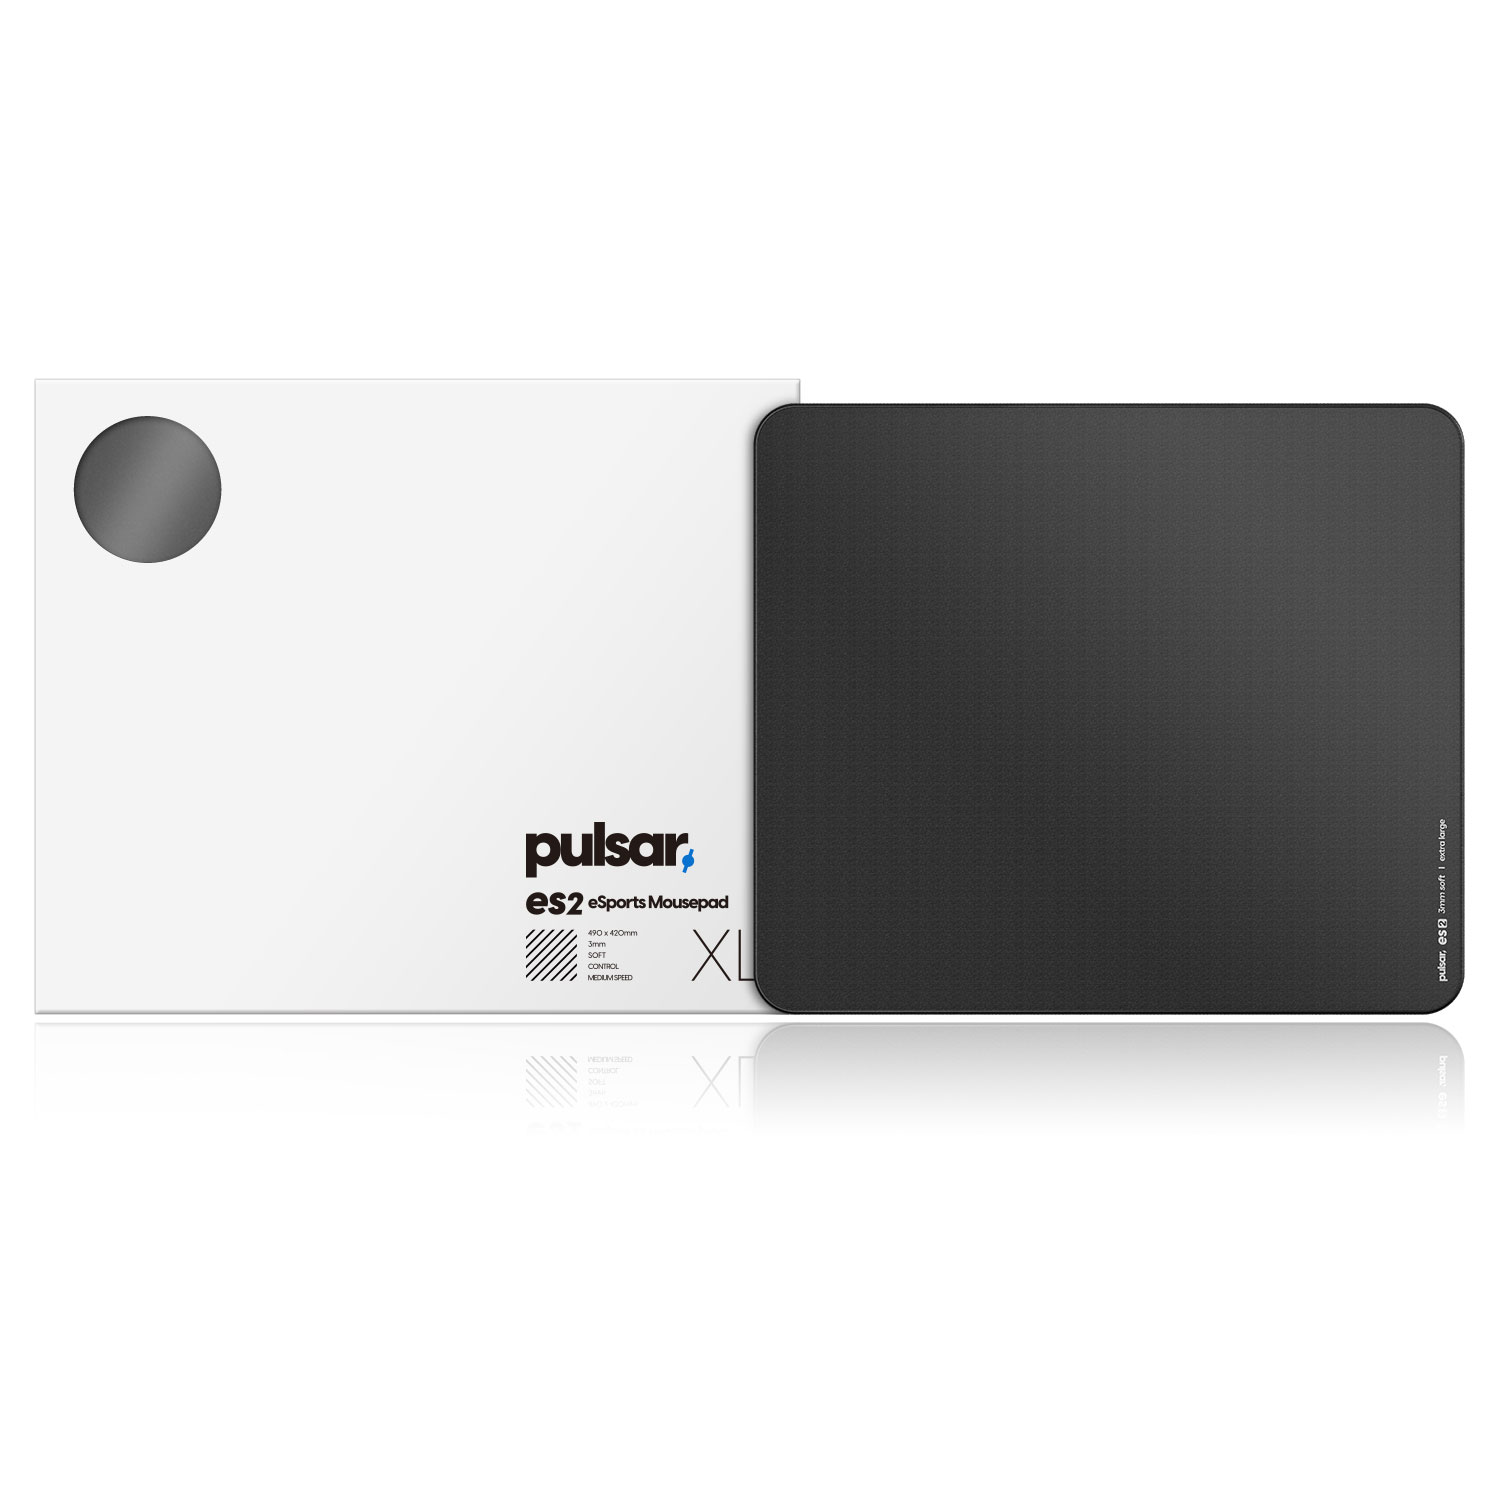 Pulsar ES2 eSports Mousepad 3mm L~XL (Medium Speed) 9